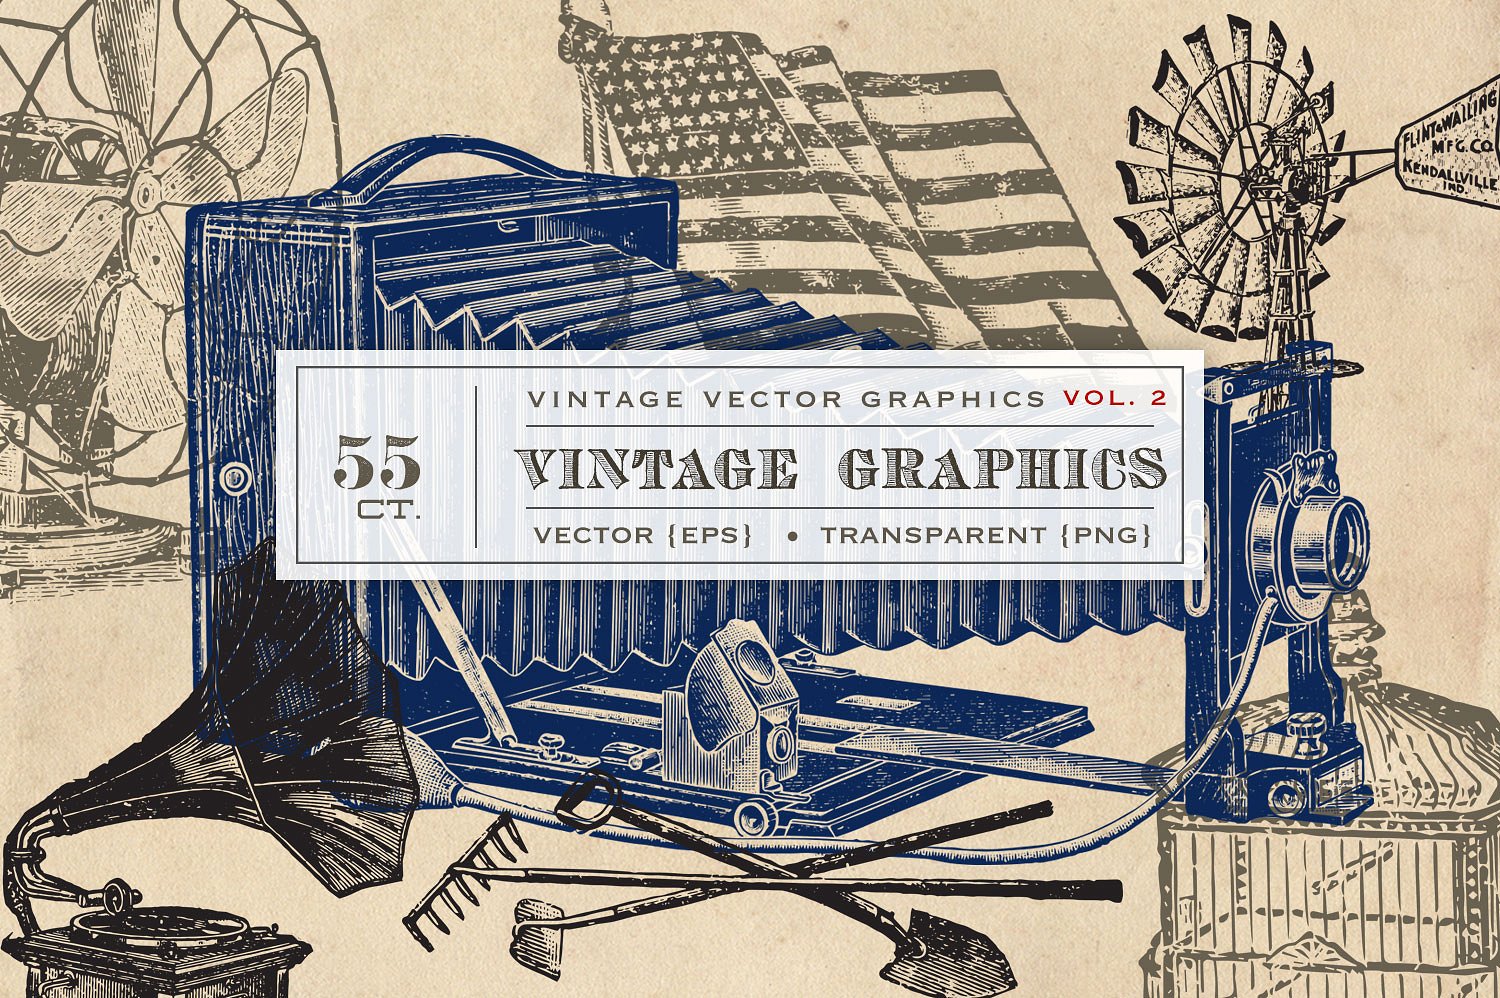 复古矢量设计素材55 Vintage Vectors Gra